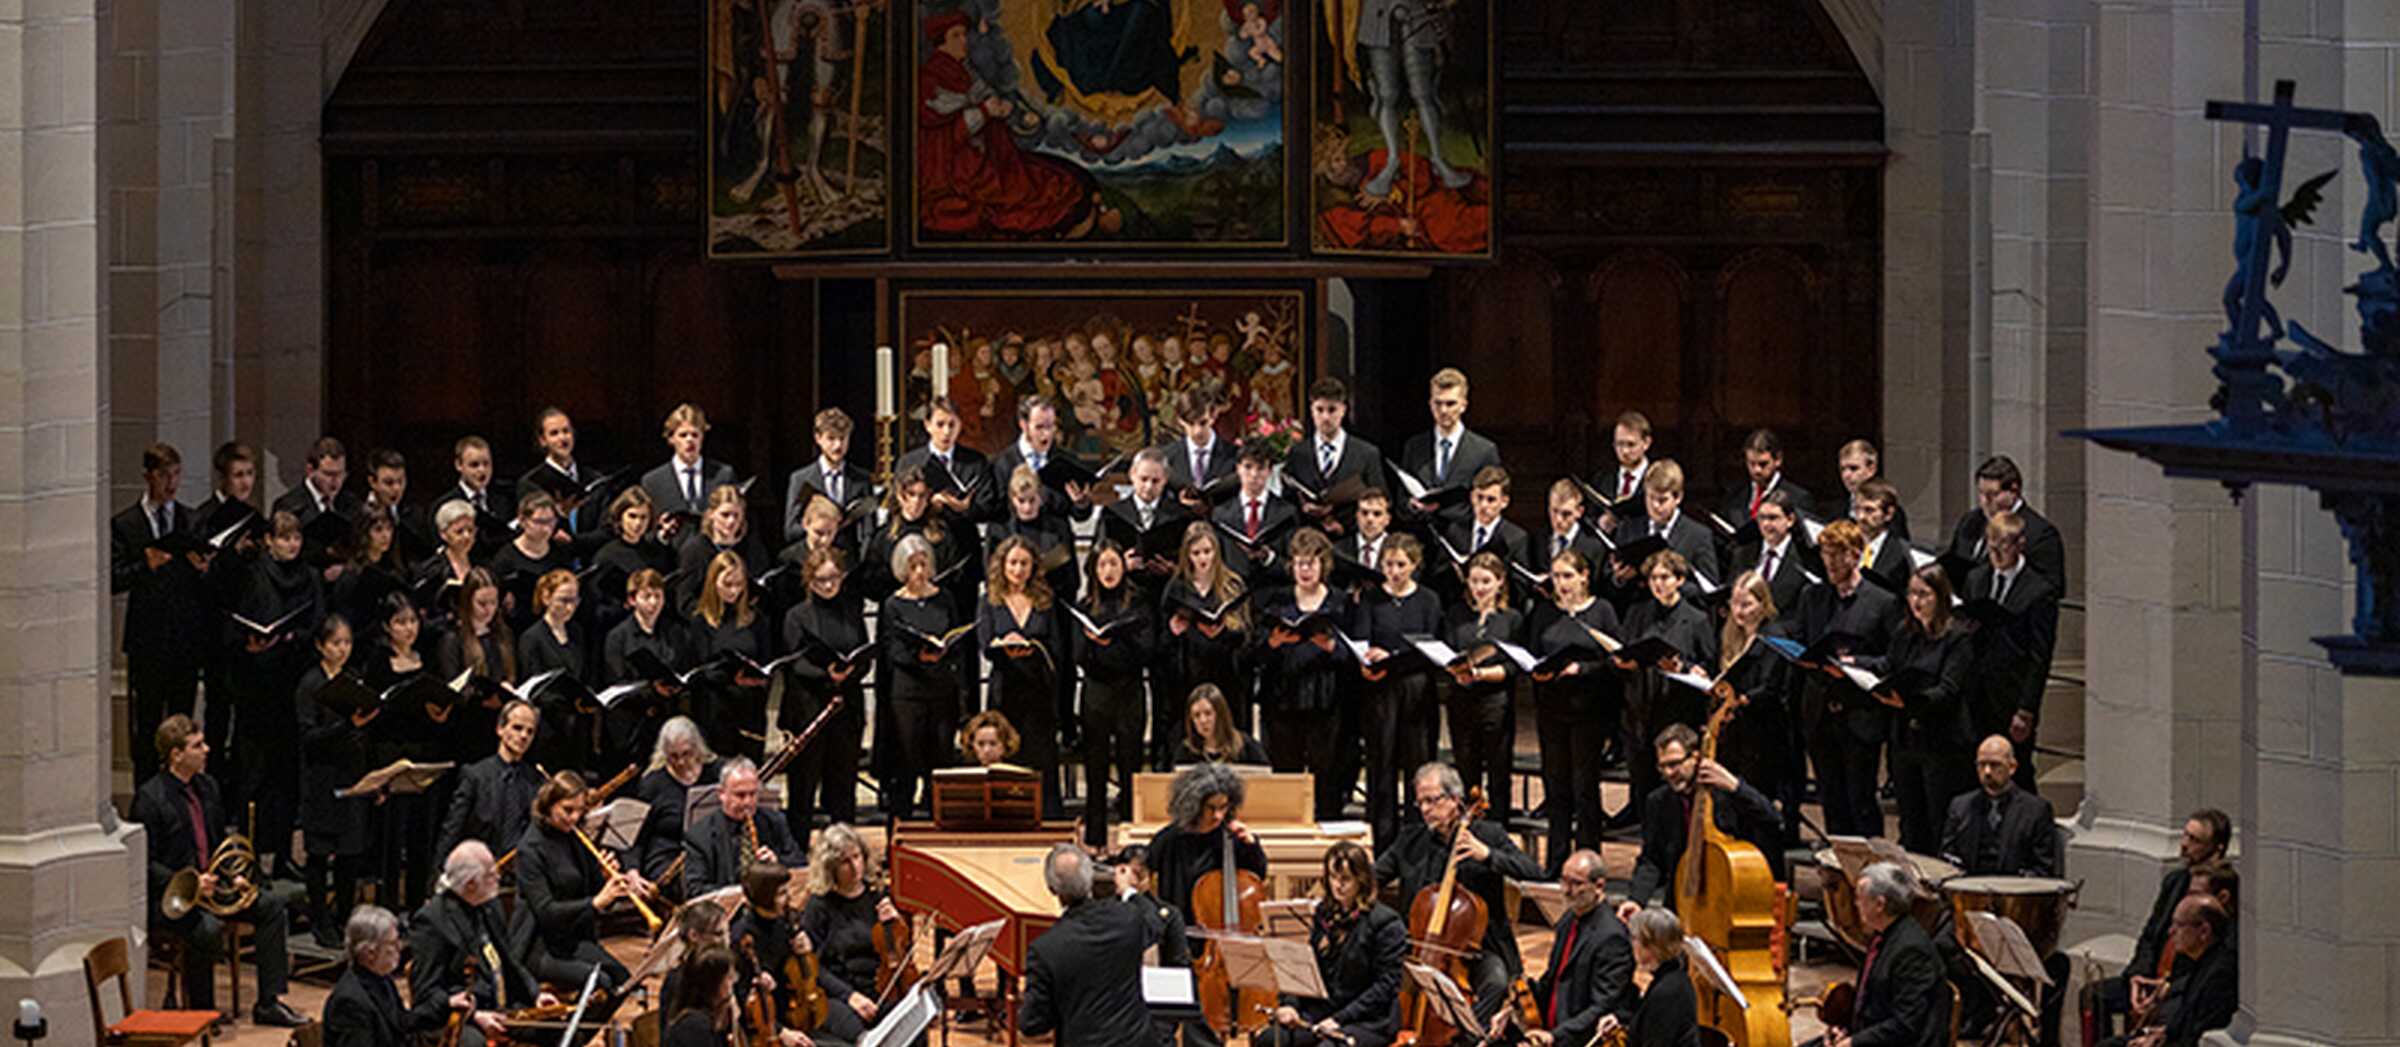 Der Konzertchor der Evangelischen Hochschule für Kirchenmusik Halle